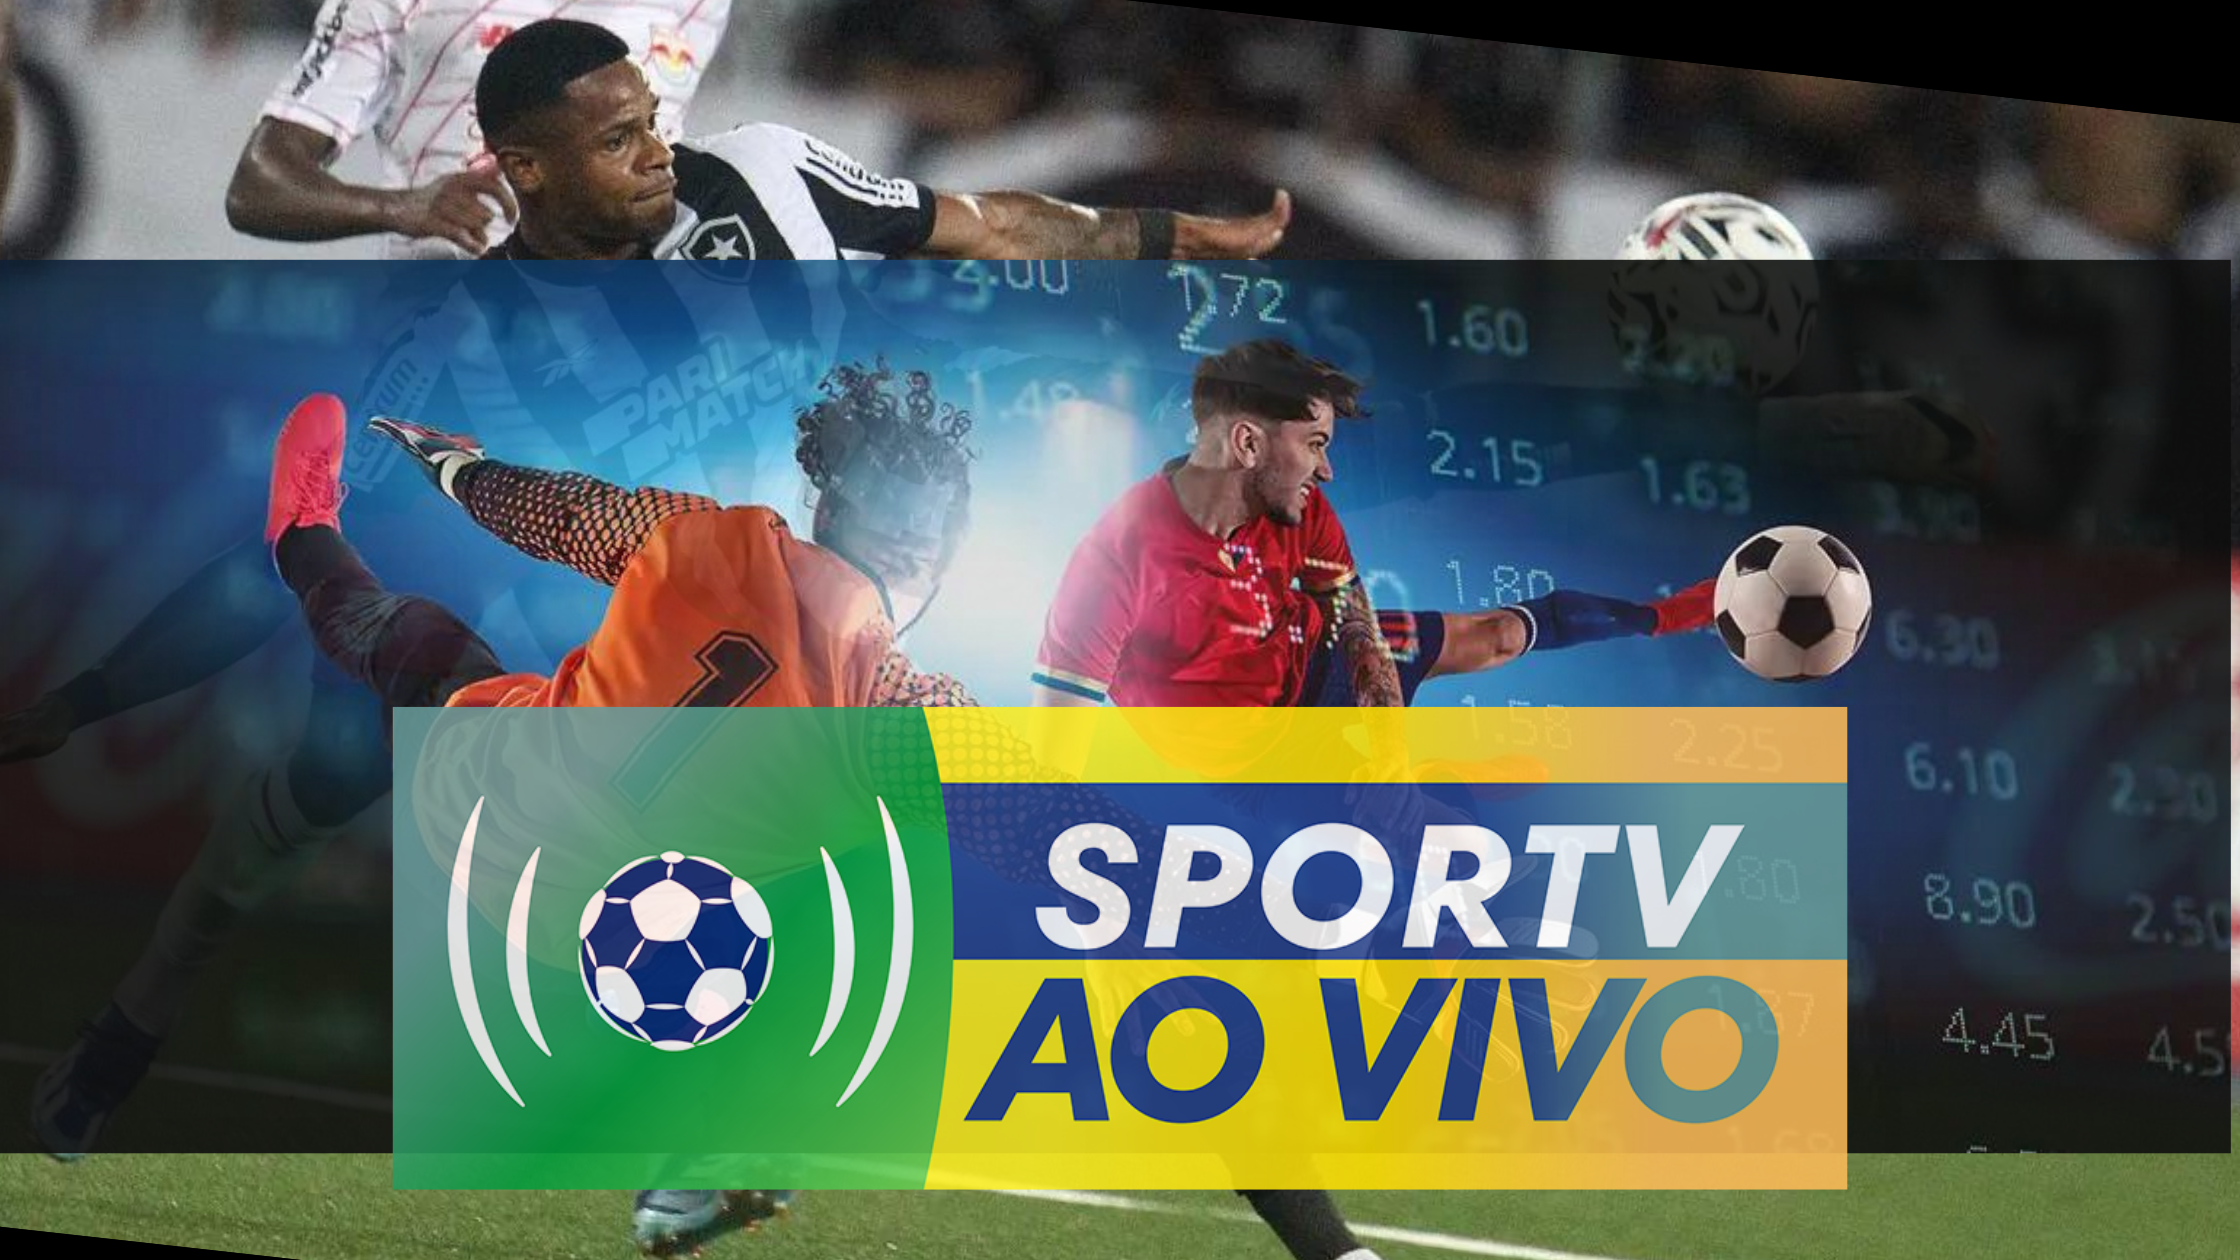 introdução às apostas esportivas online sportv ao vivo